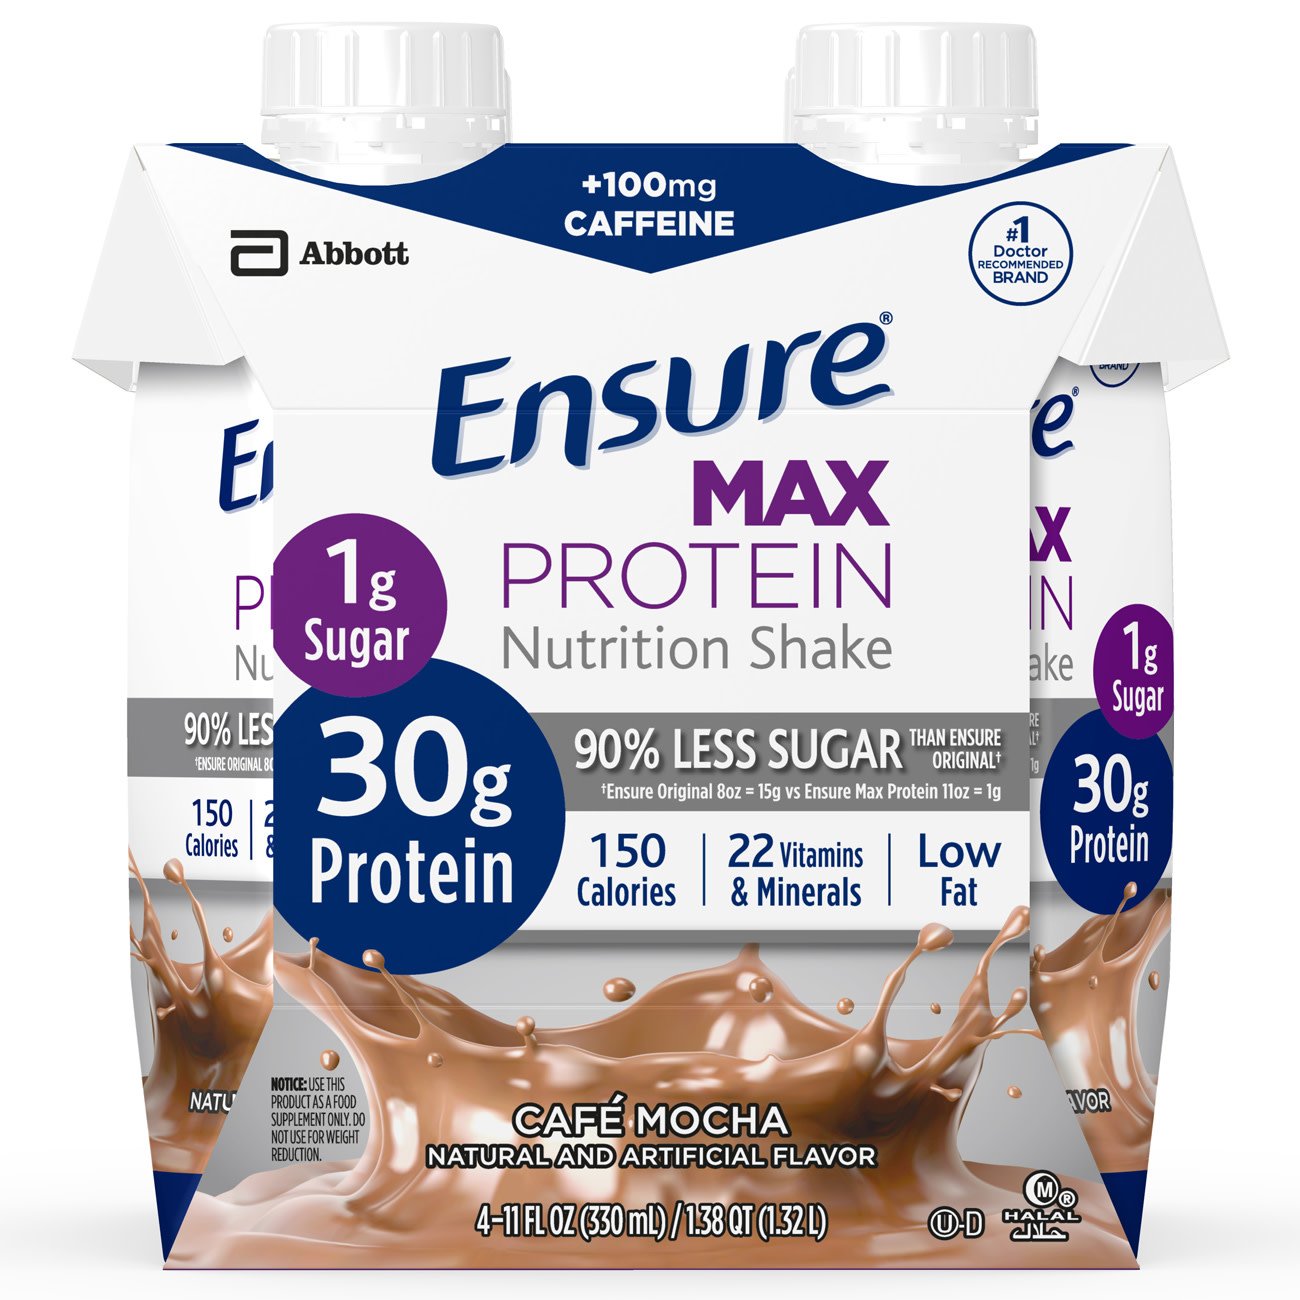 Ensure® Max Café Mocha Protein Nutrition Shake, 11-ounce carton (4 Units)